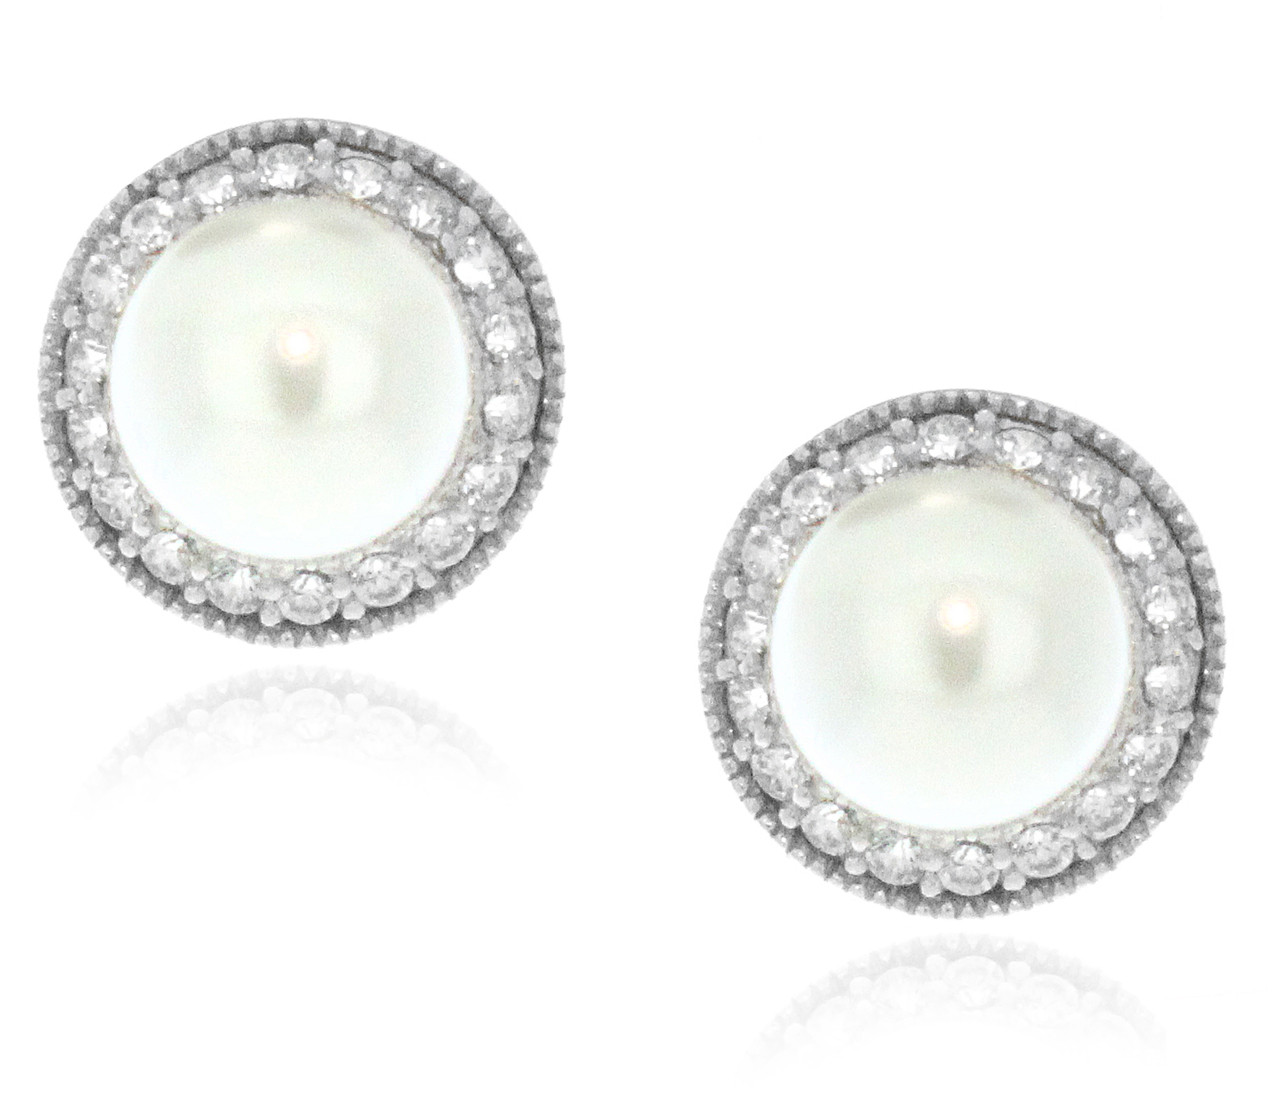 Set of Four】New Women Pearl Earrings Stud Earrings High Quality Sterling  Silver 925 Earrings Fashion Women Jewellery